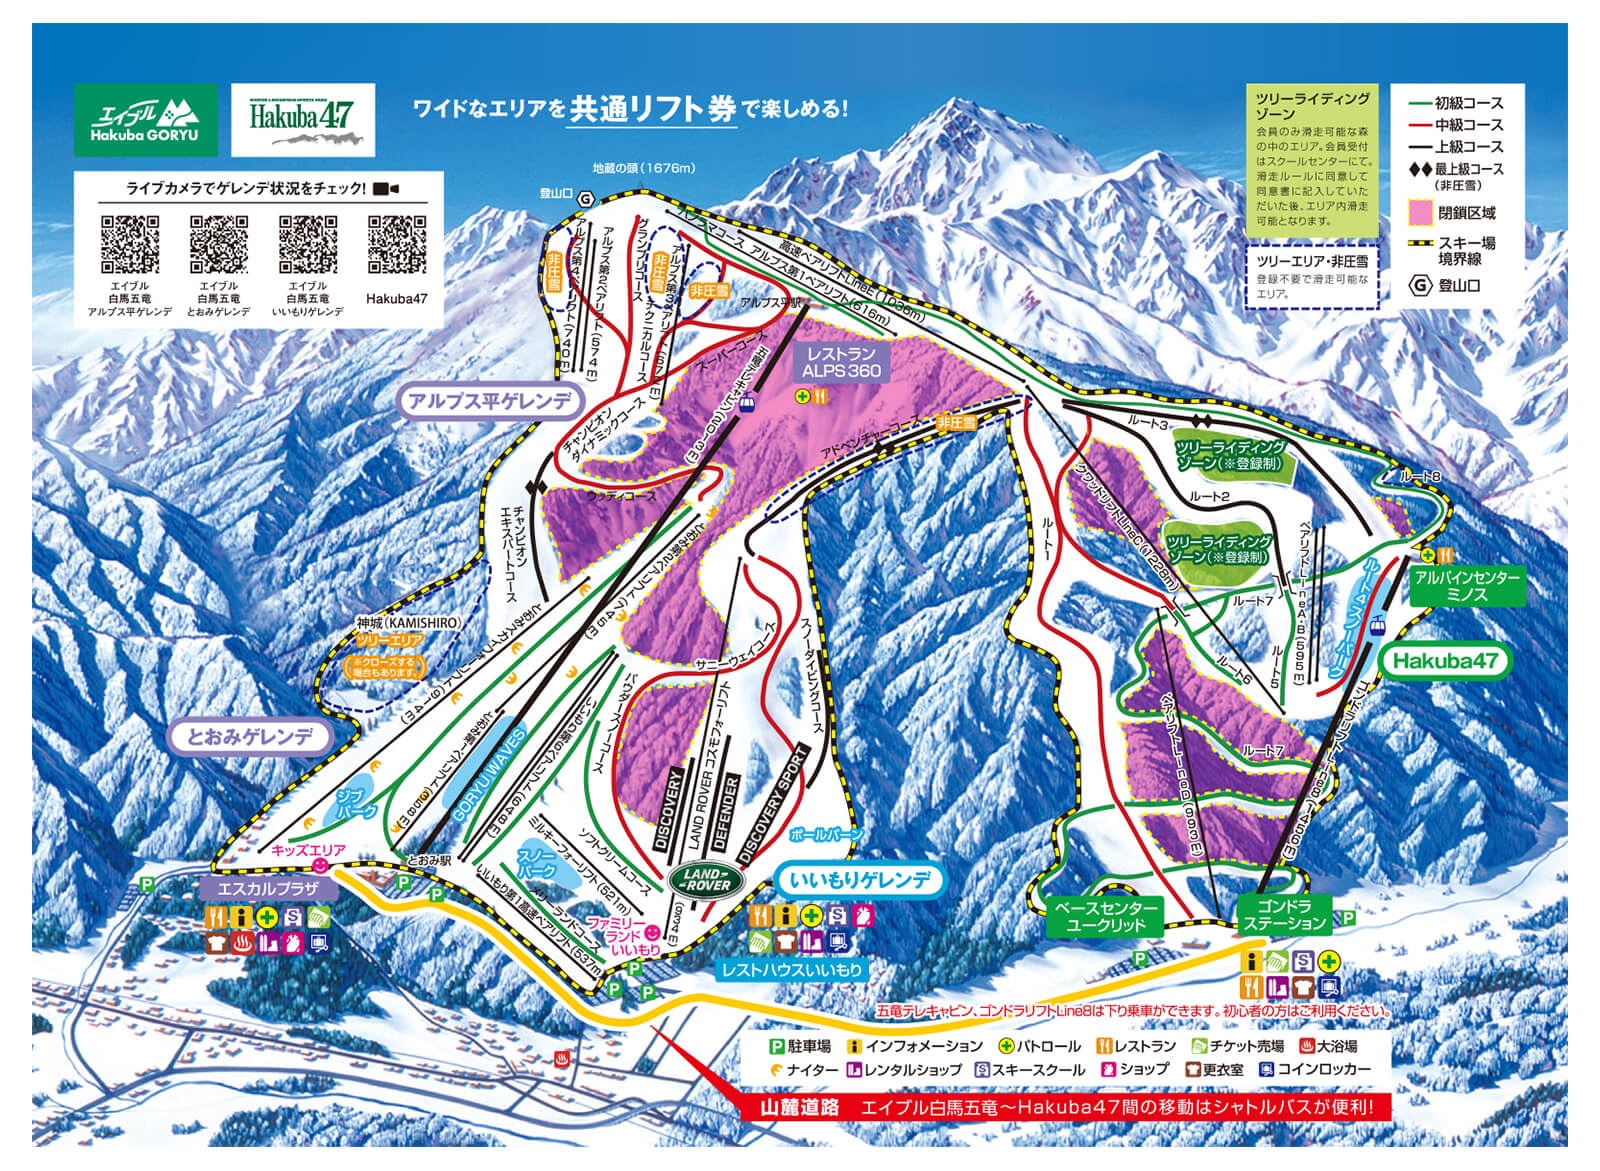 スキー場基本情報 | Hakuba47 Winter Sports Park